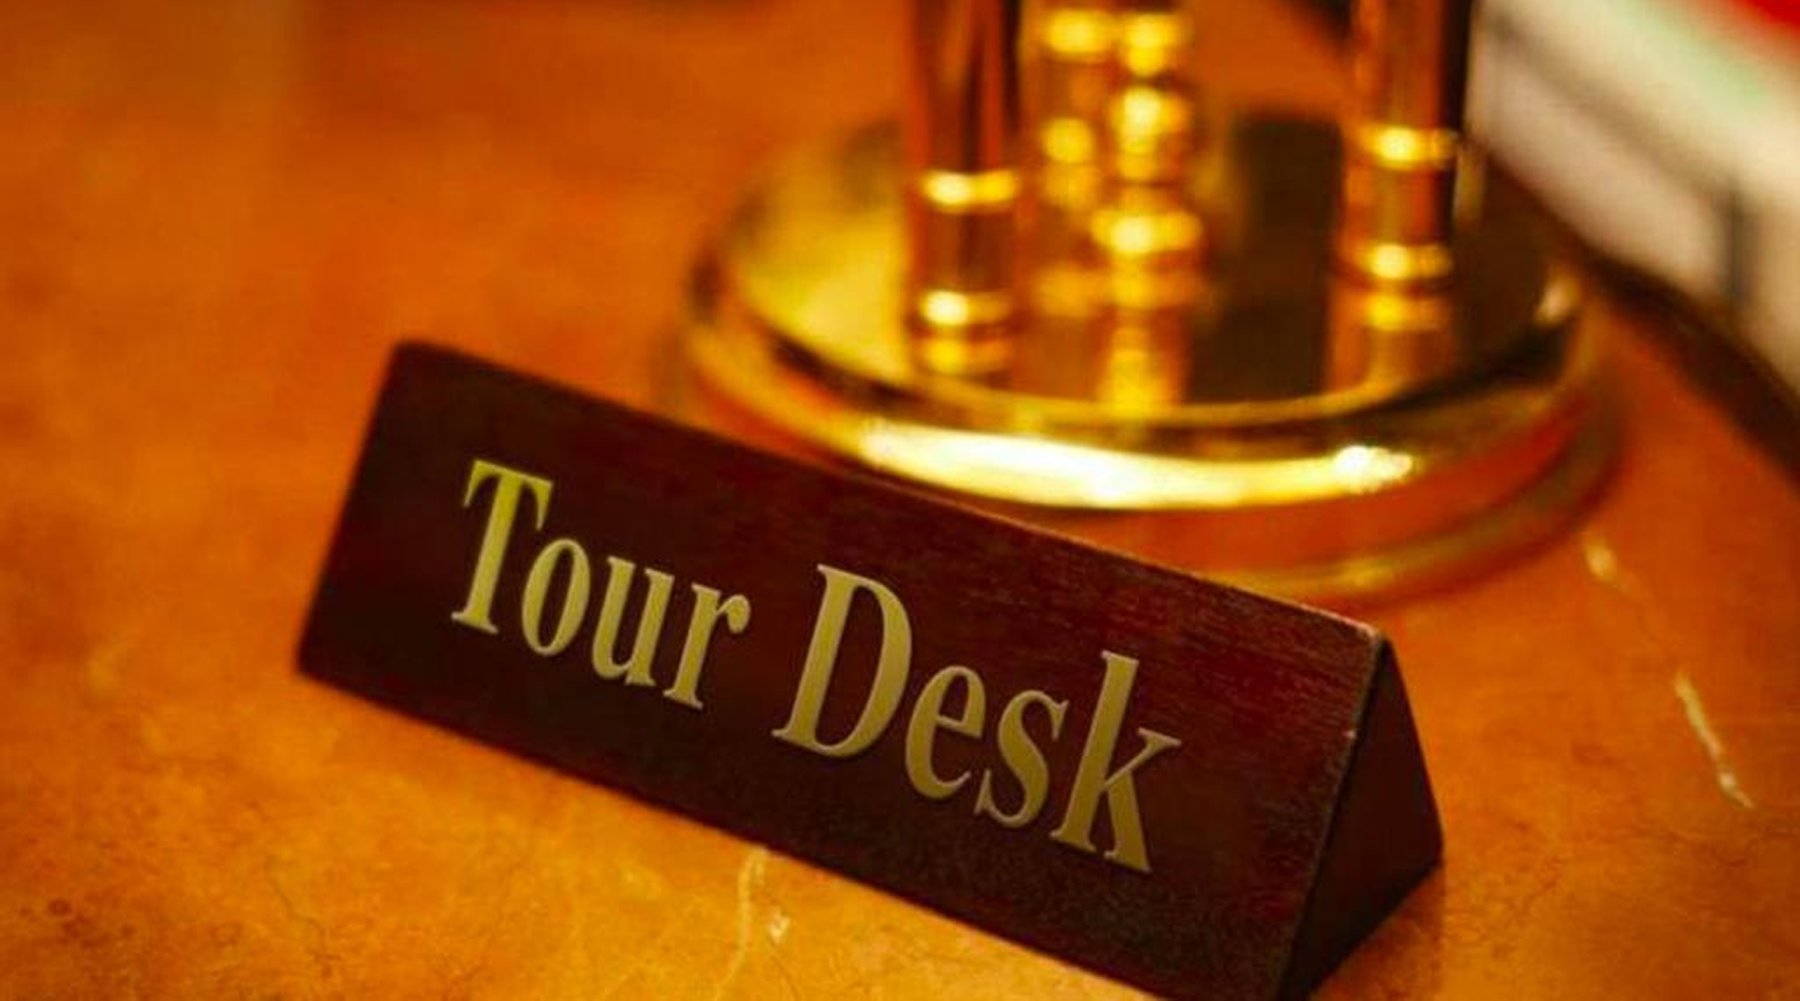 the tour desk